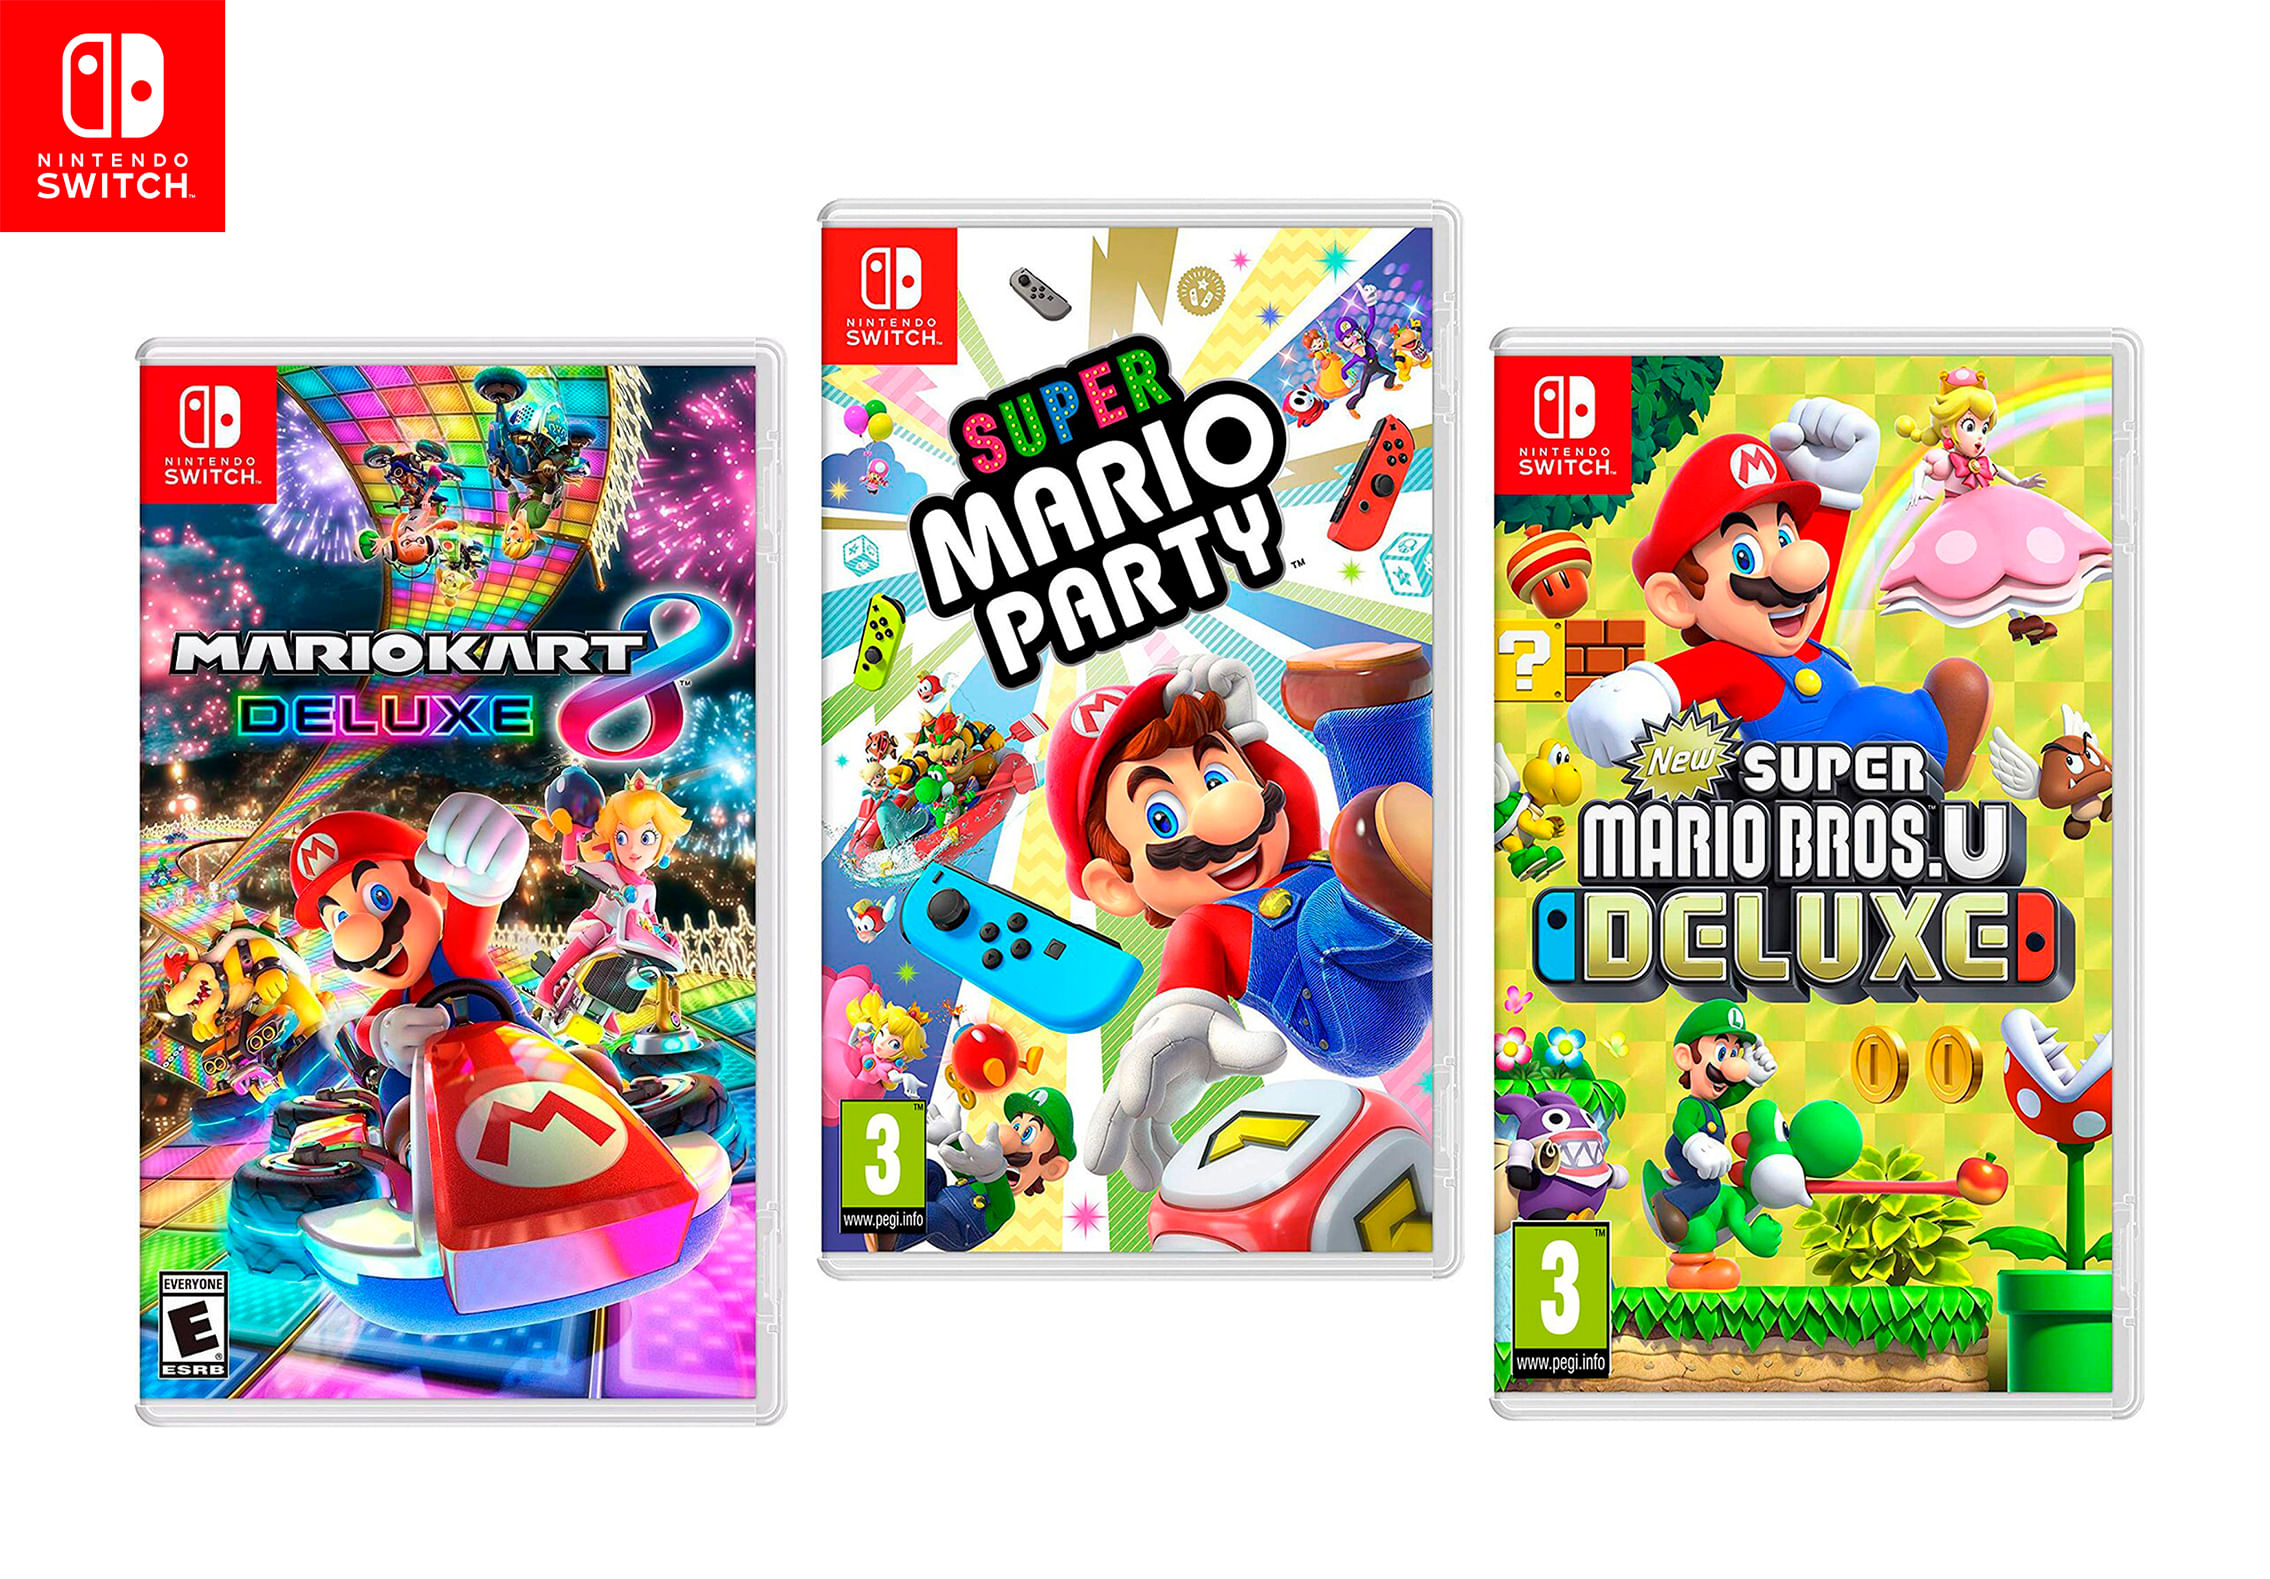 Juegos de Nintendo Switch: Mario Kart 8 Deluxe + Super Mario Party + New Super Mario Bros U Deluxe